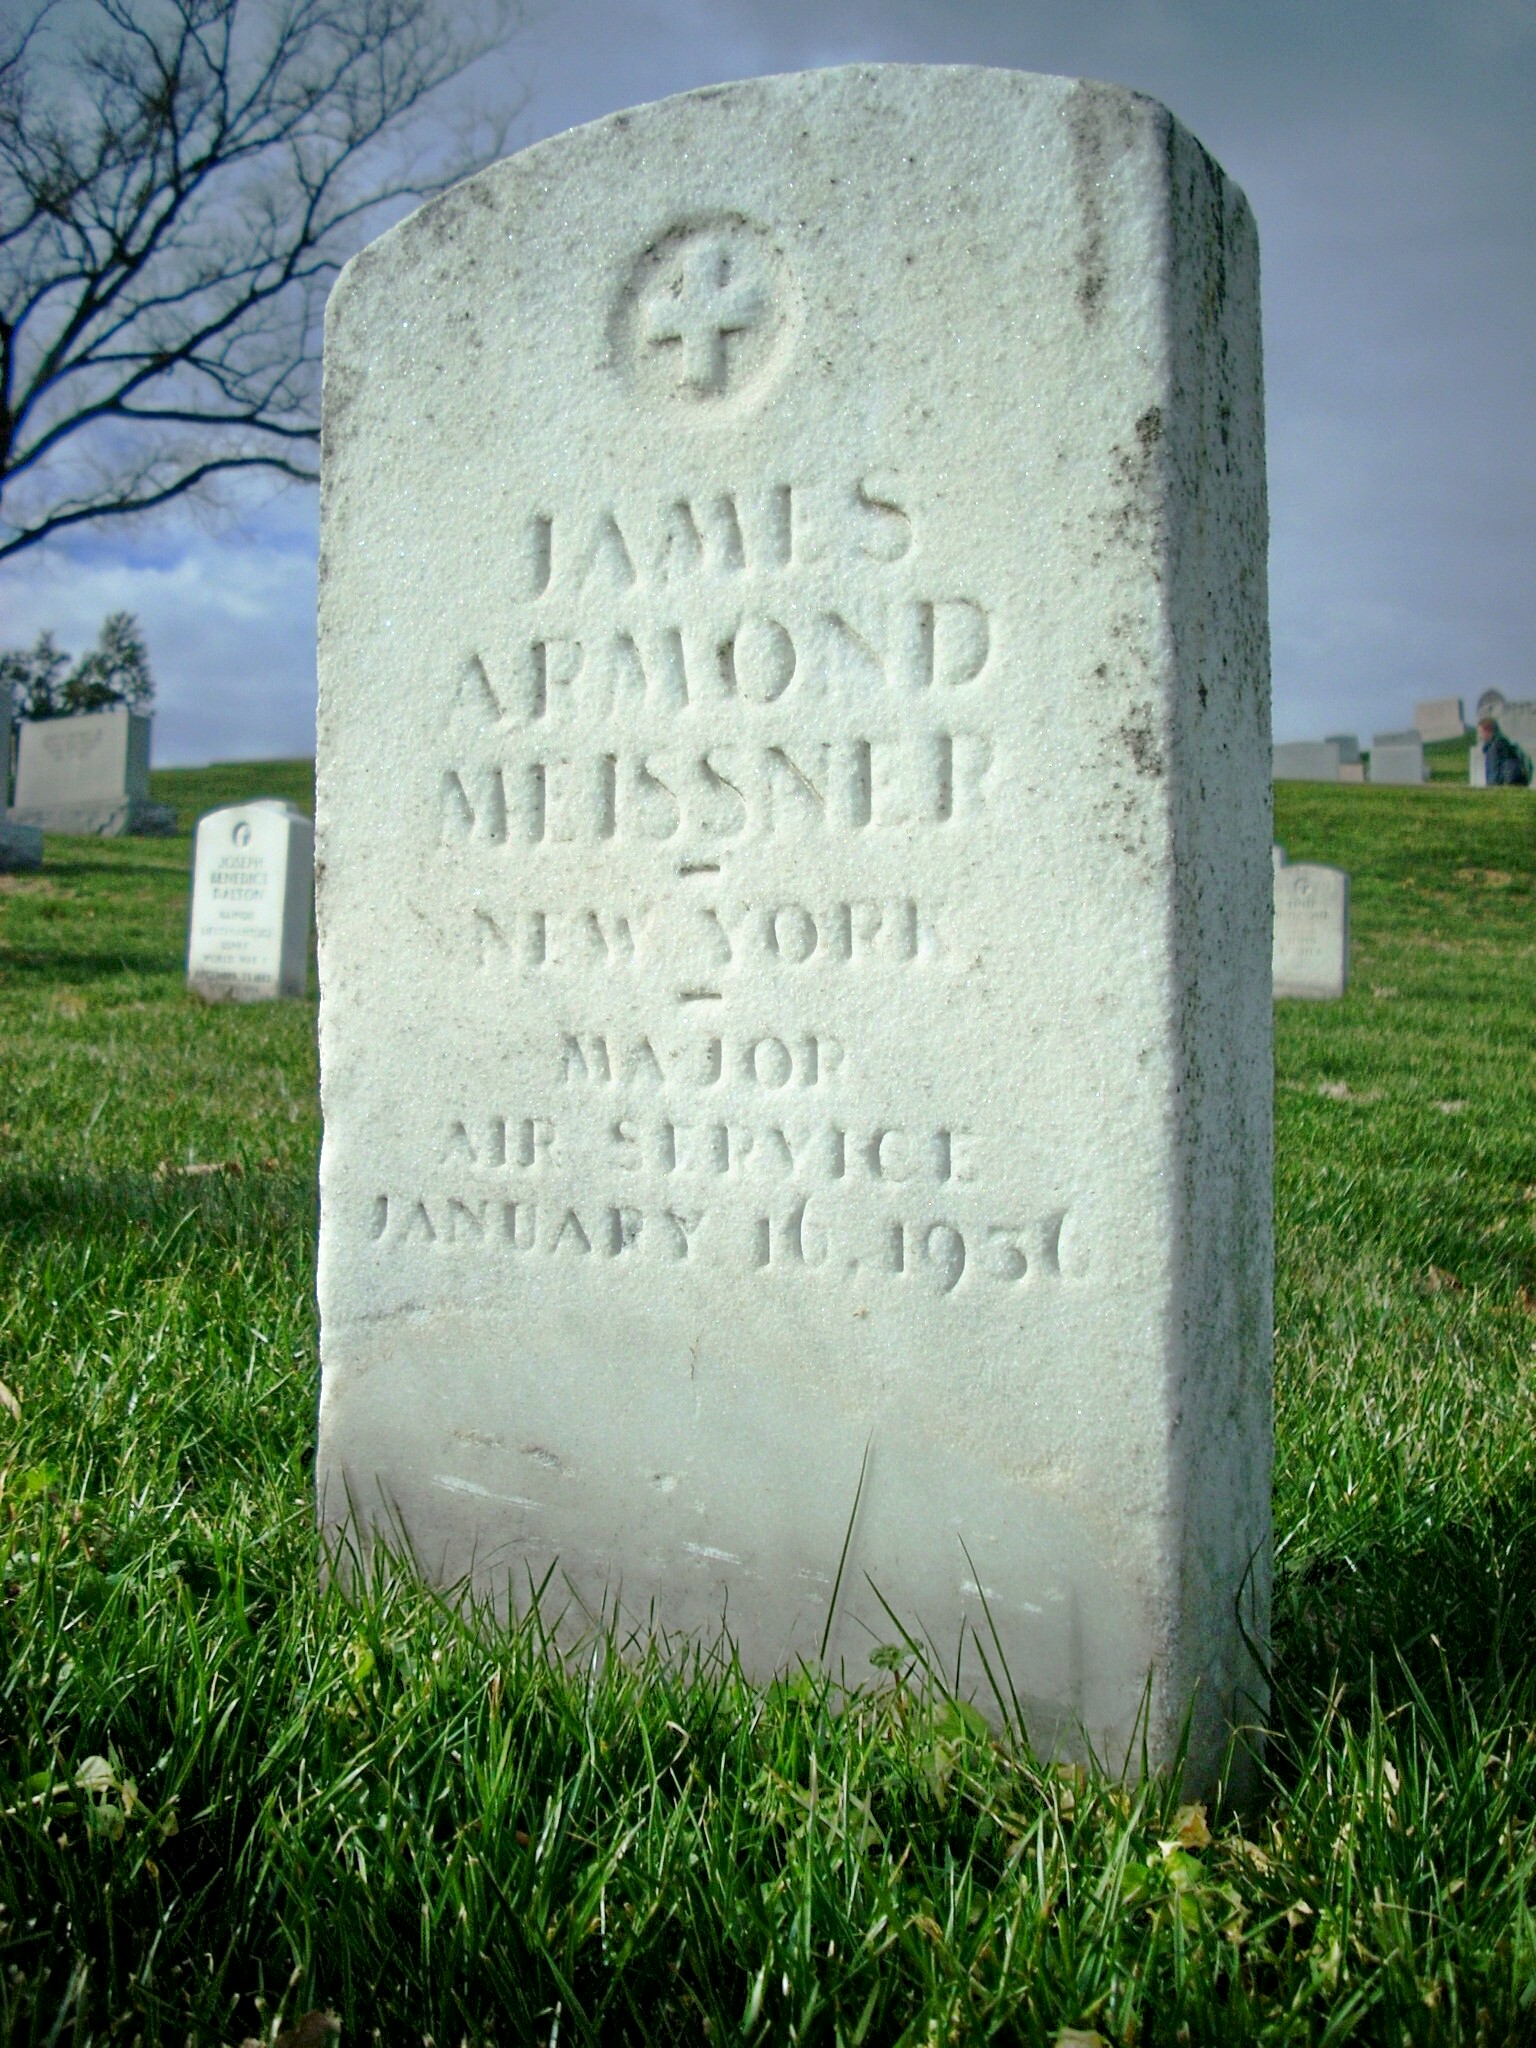 jameissner-gravesite-photo-january-2009-010